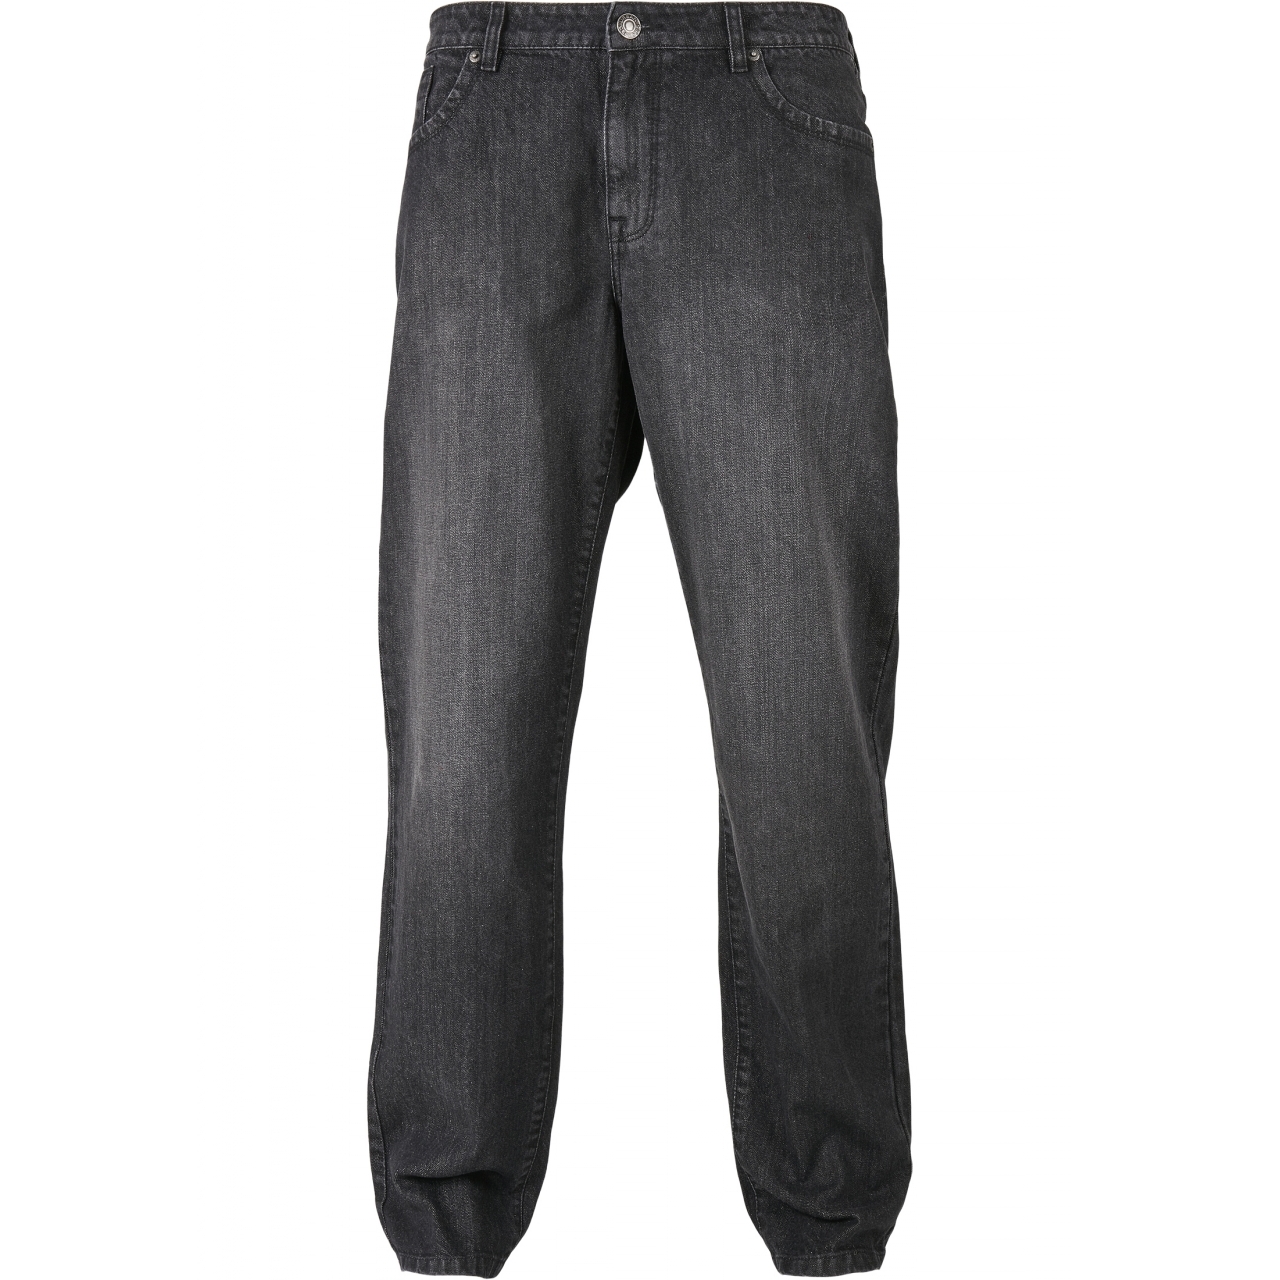 Džíny Urban Classics Loose Fit Jeans - černé, 34/34